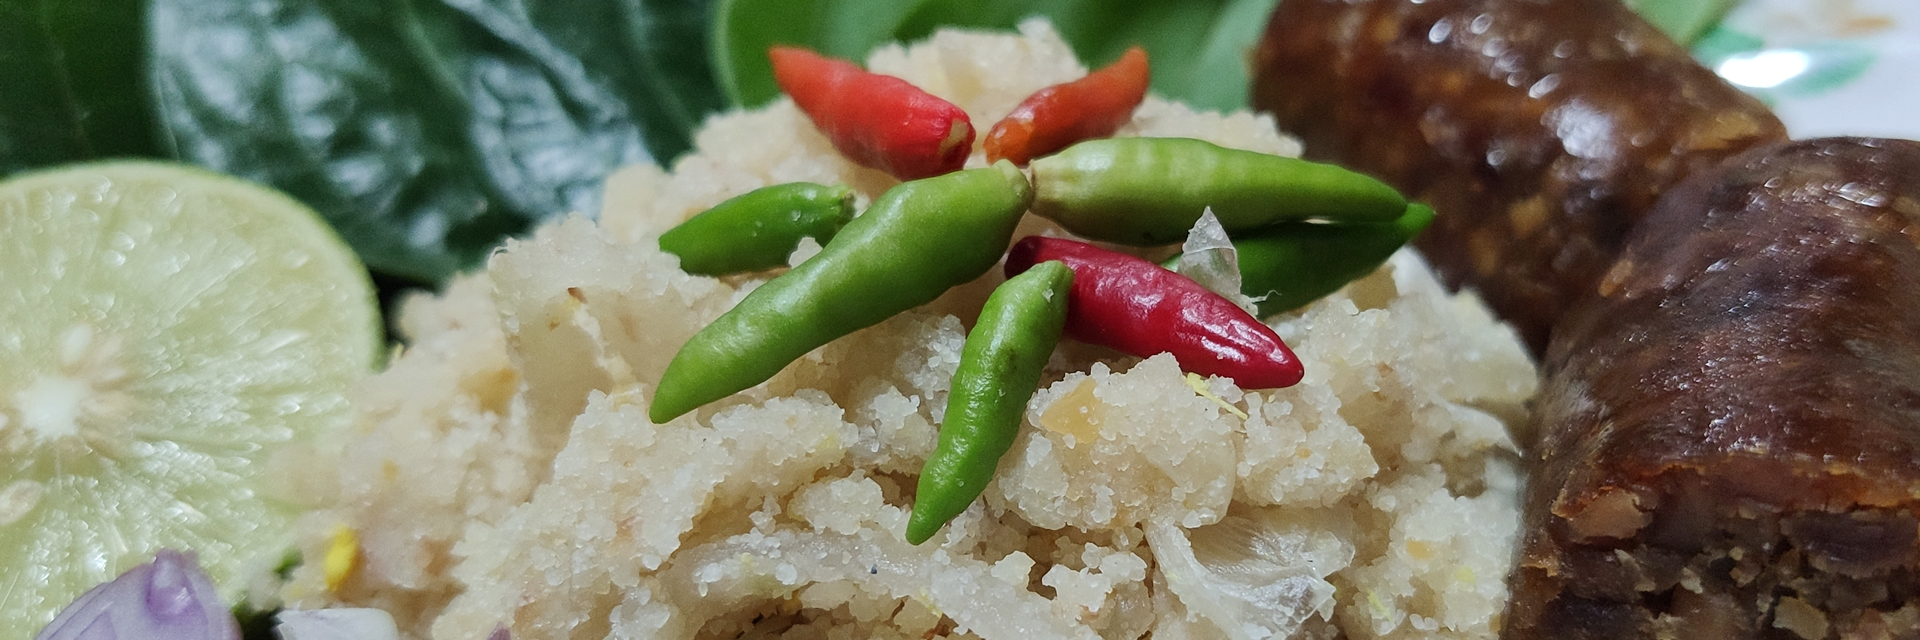 ไส้กรอก-ปลาแนม อาหารโบราณในรัชกาลที่ 2 หาทานได้ที่ “ตลาดนางเลิ้ง” กรุงเทพฯ